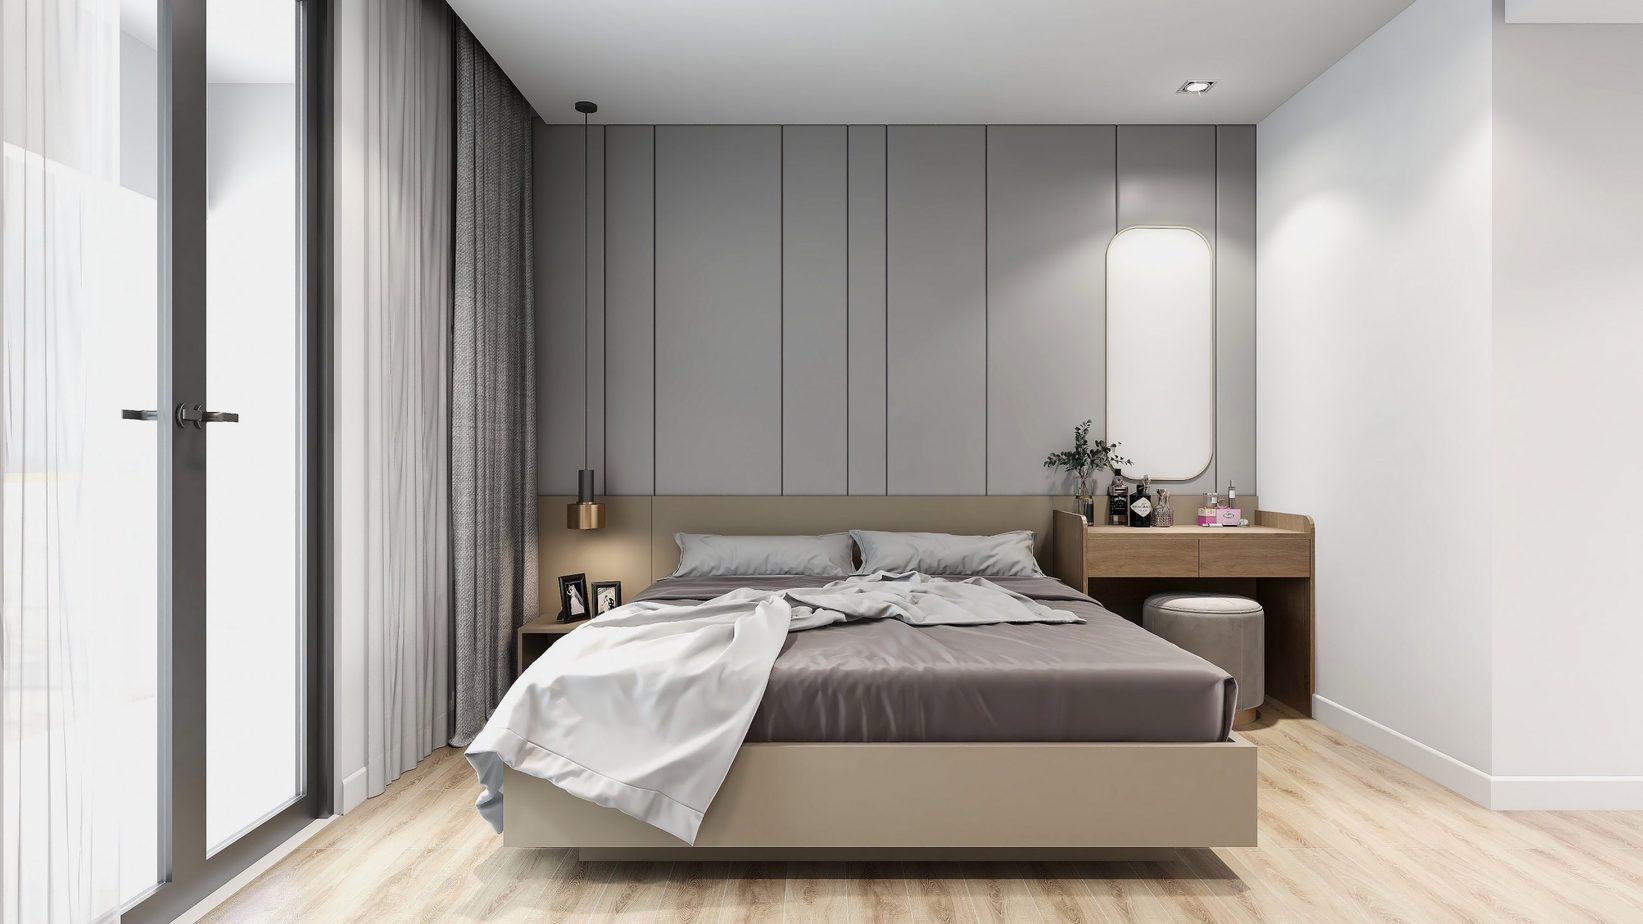 Giường ngủ, tab đầu giường đều thiết kế đơn giản với sắc ghi nhạt nhẹ nhàng, thanh lịch, mang lại cảm giác dễ chịu.